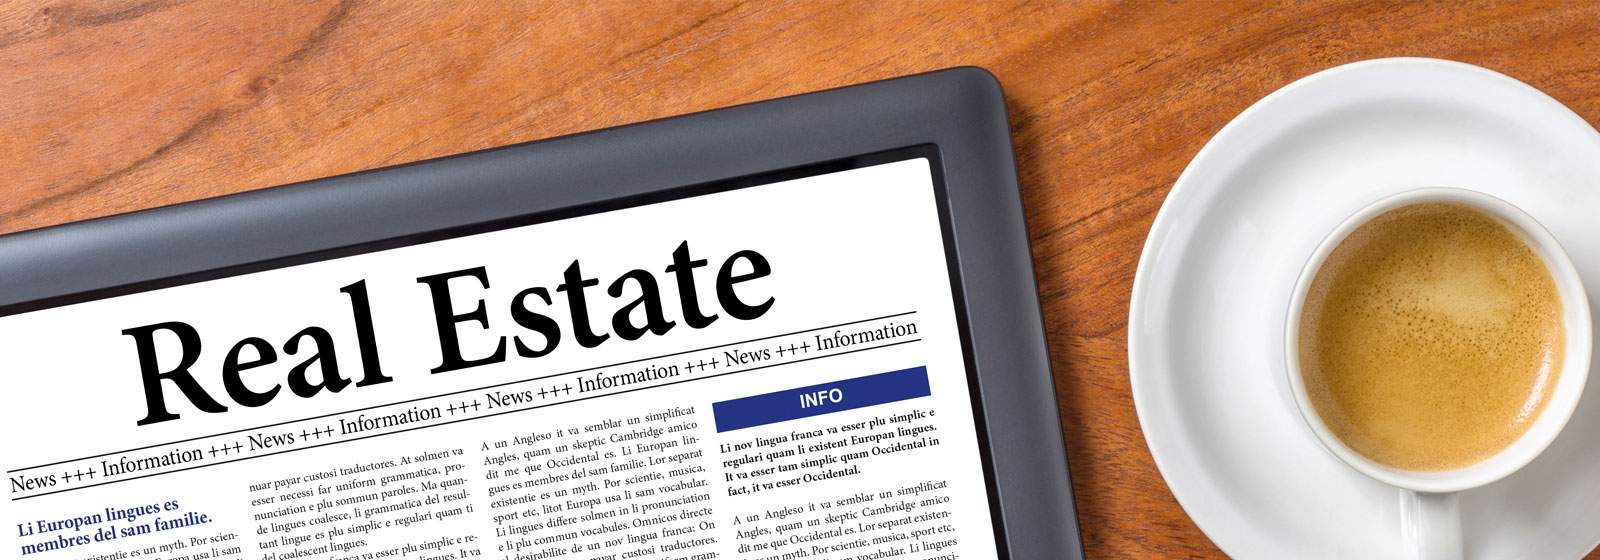 news-florida-rebate-real-estate